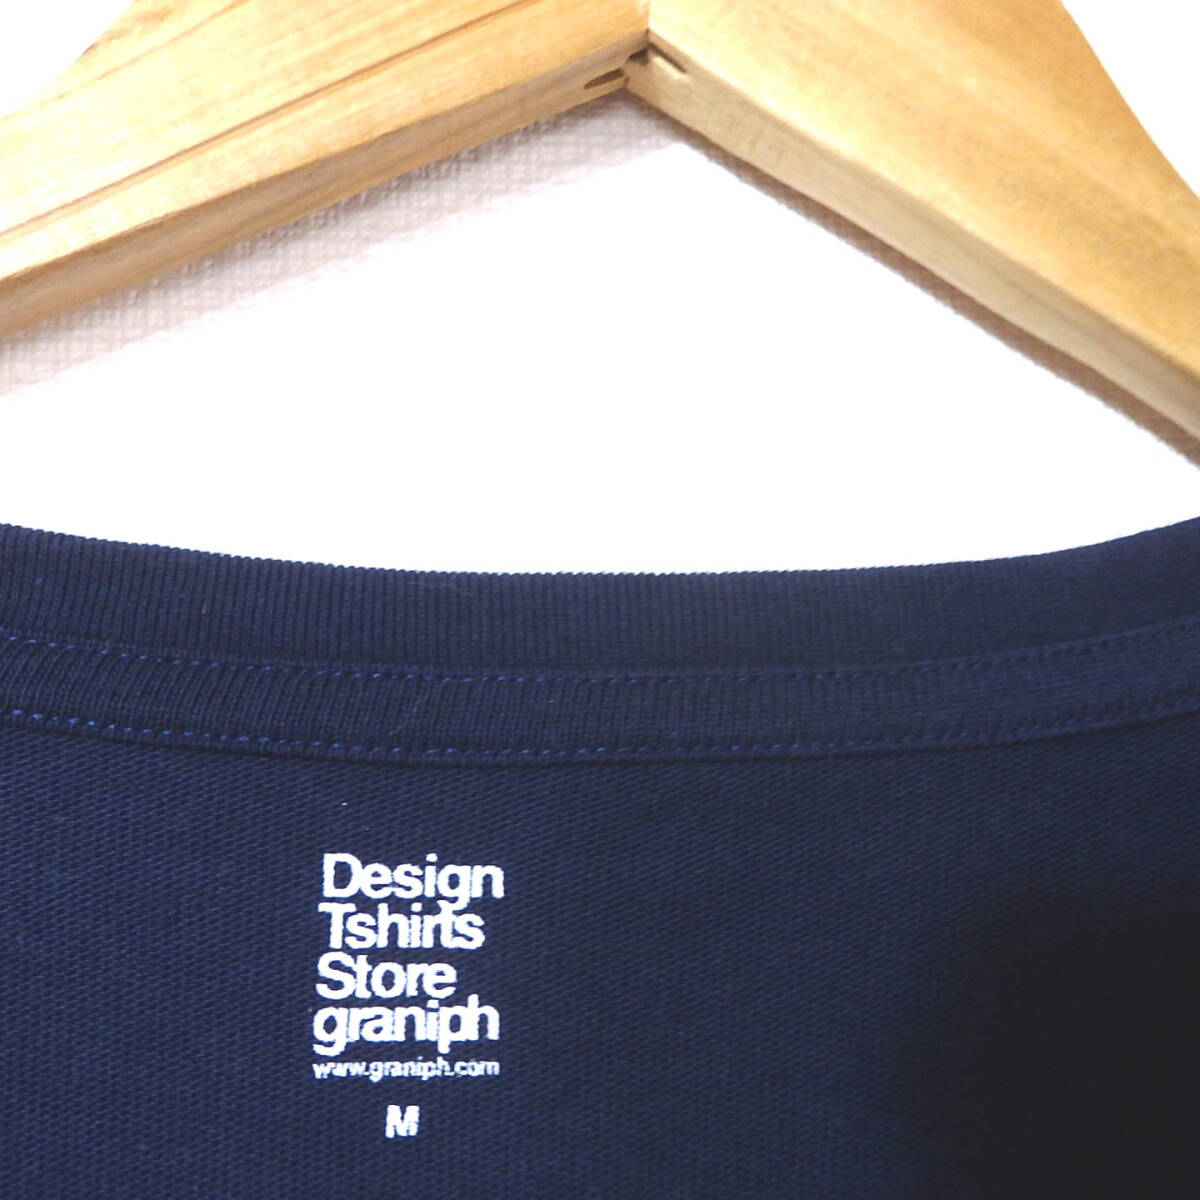 【送料無料】グラニフTシャツ/美品 厚手 ゆったりめ アザラシ  紺色 Design Tshirts Store graniphの画像3